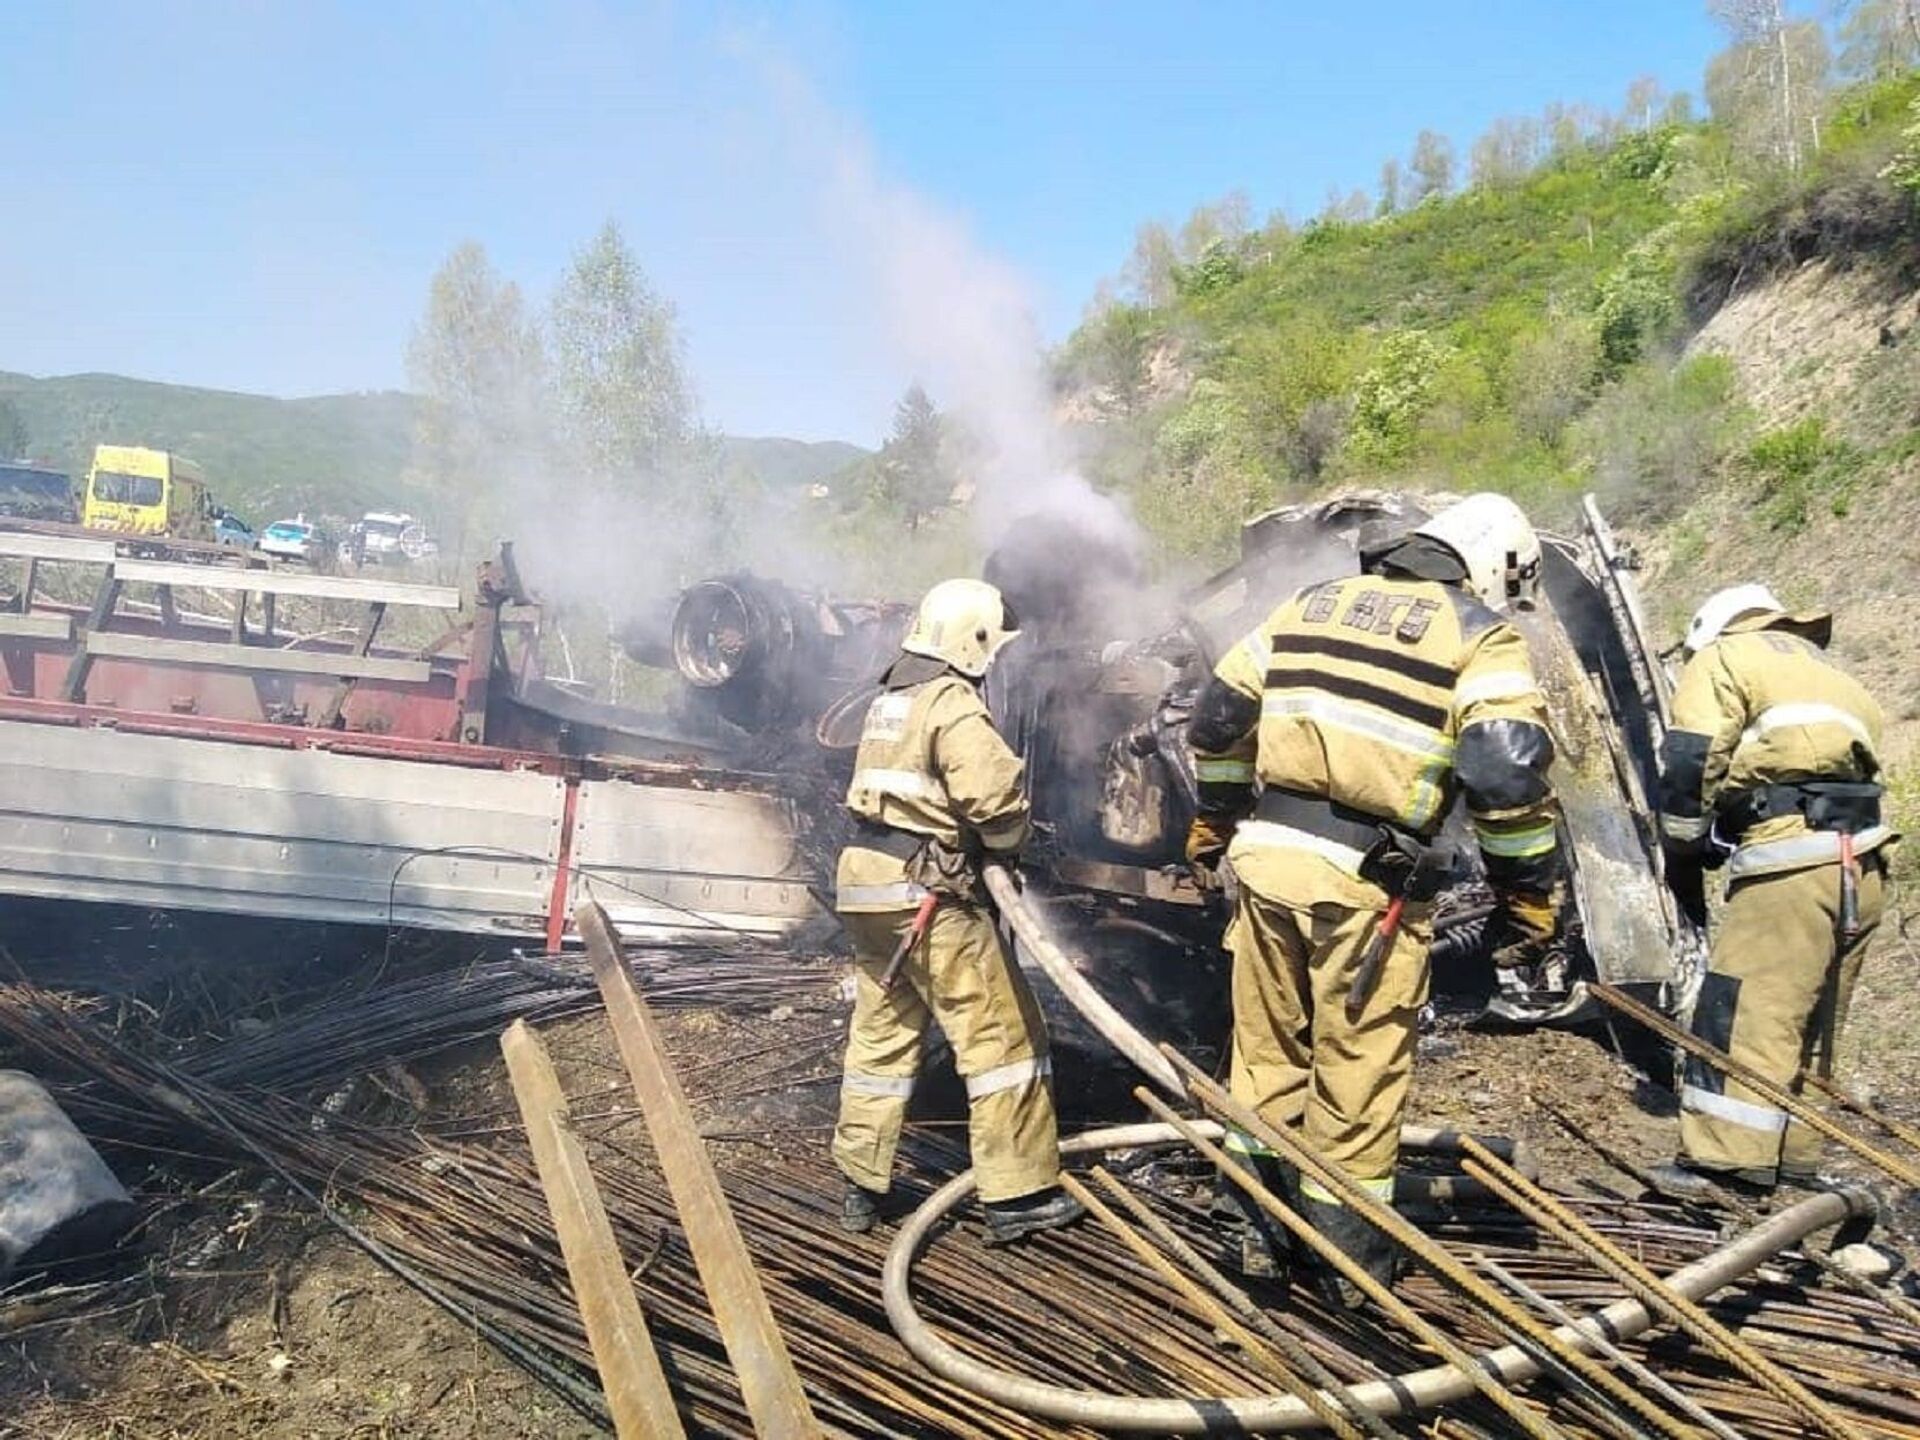 Тела двух человек нашли в сгоревшем грузовике на востоке Казахстана - Sputnik Казахстан, 1920, 15.05.2021